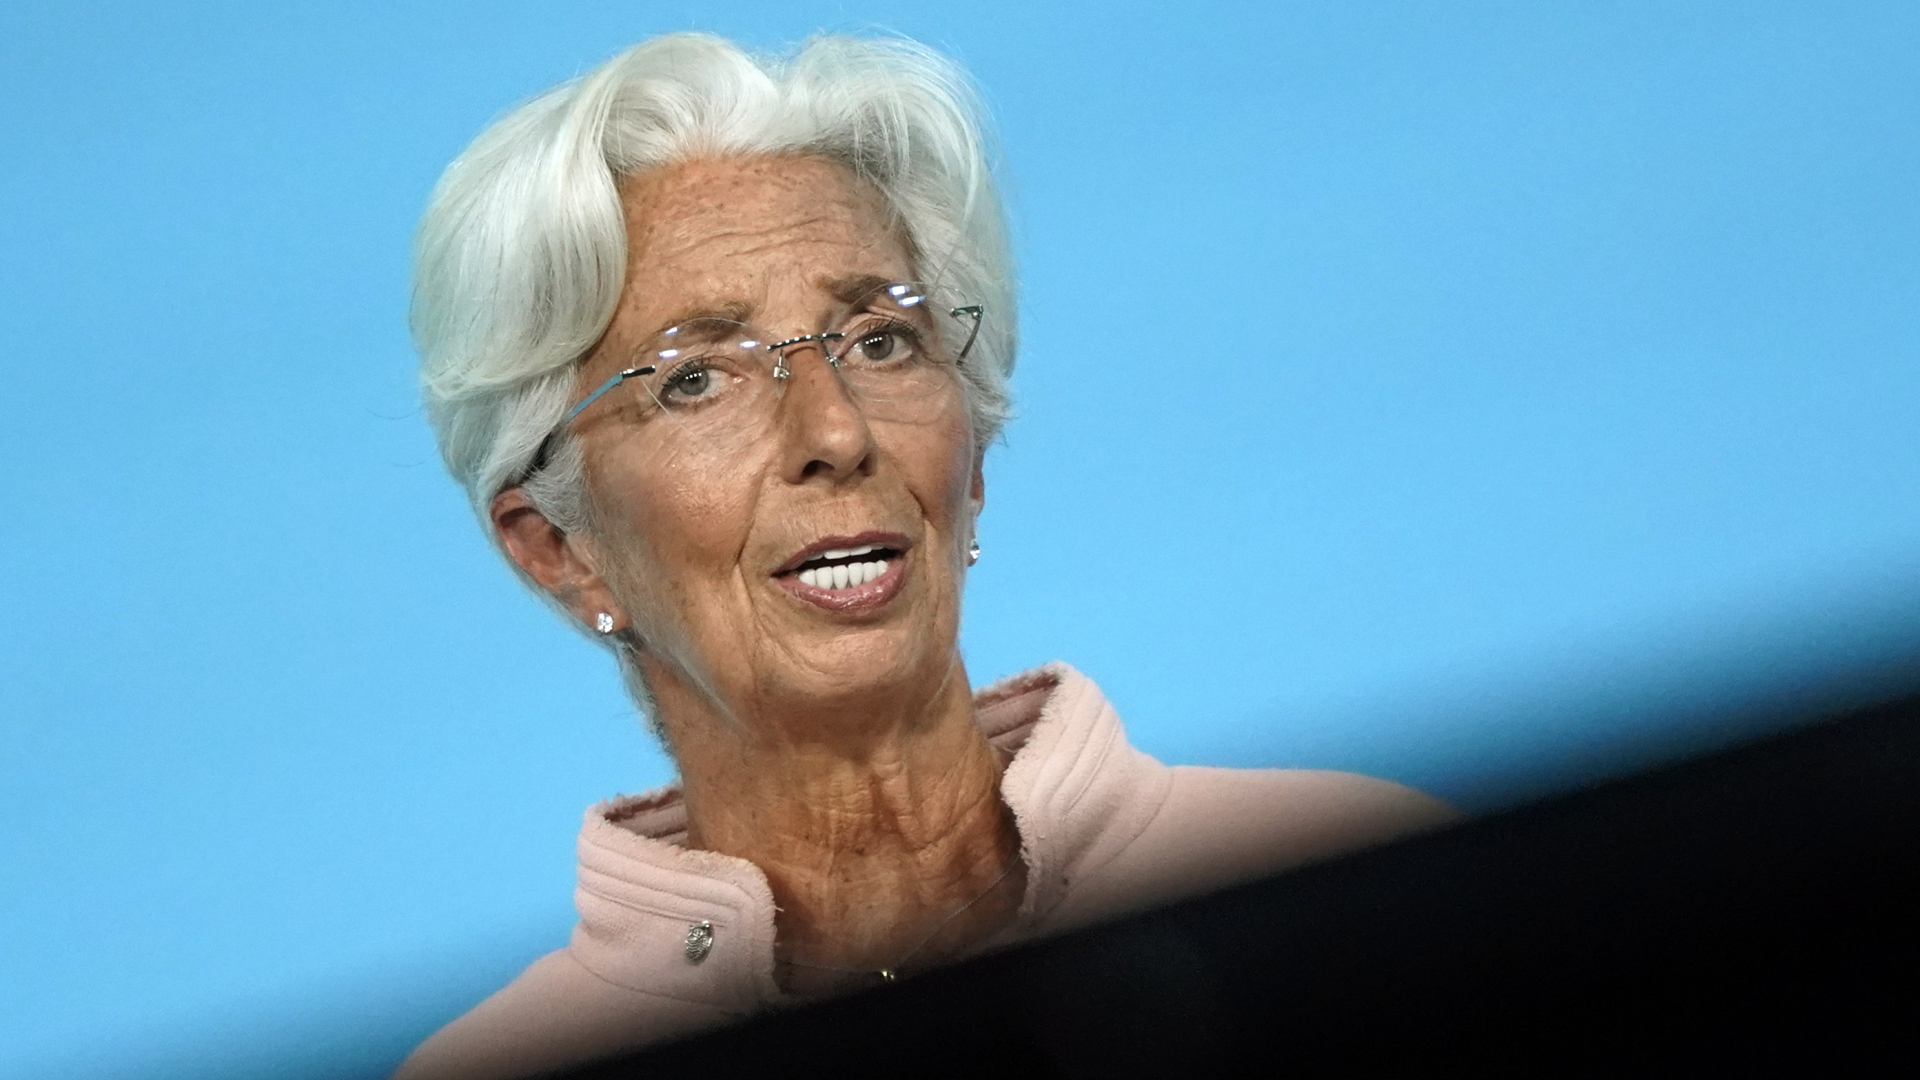 EZB-Präsidentin Christine Lagarde spricht bei einer Pressekonferenz | EPA